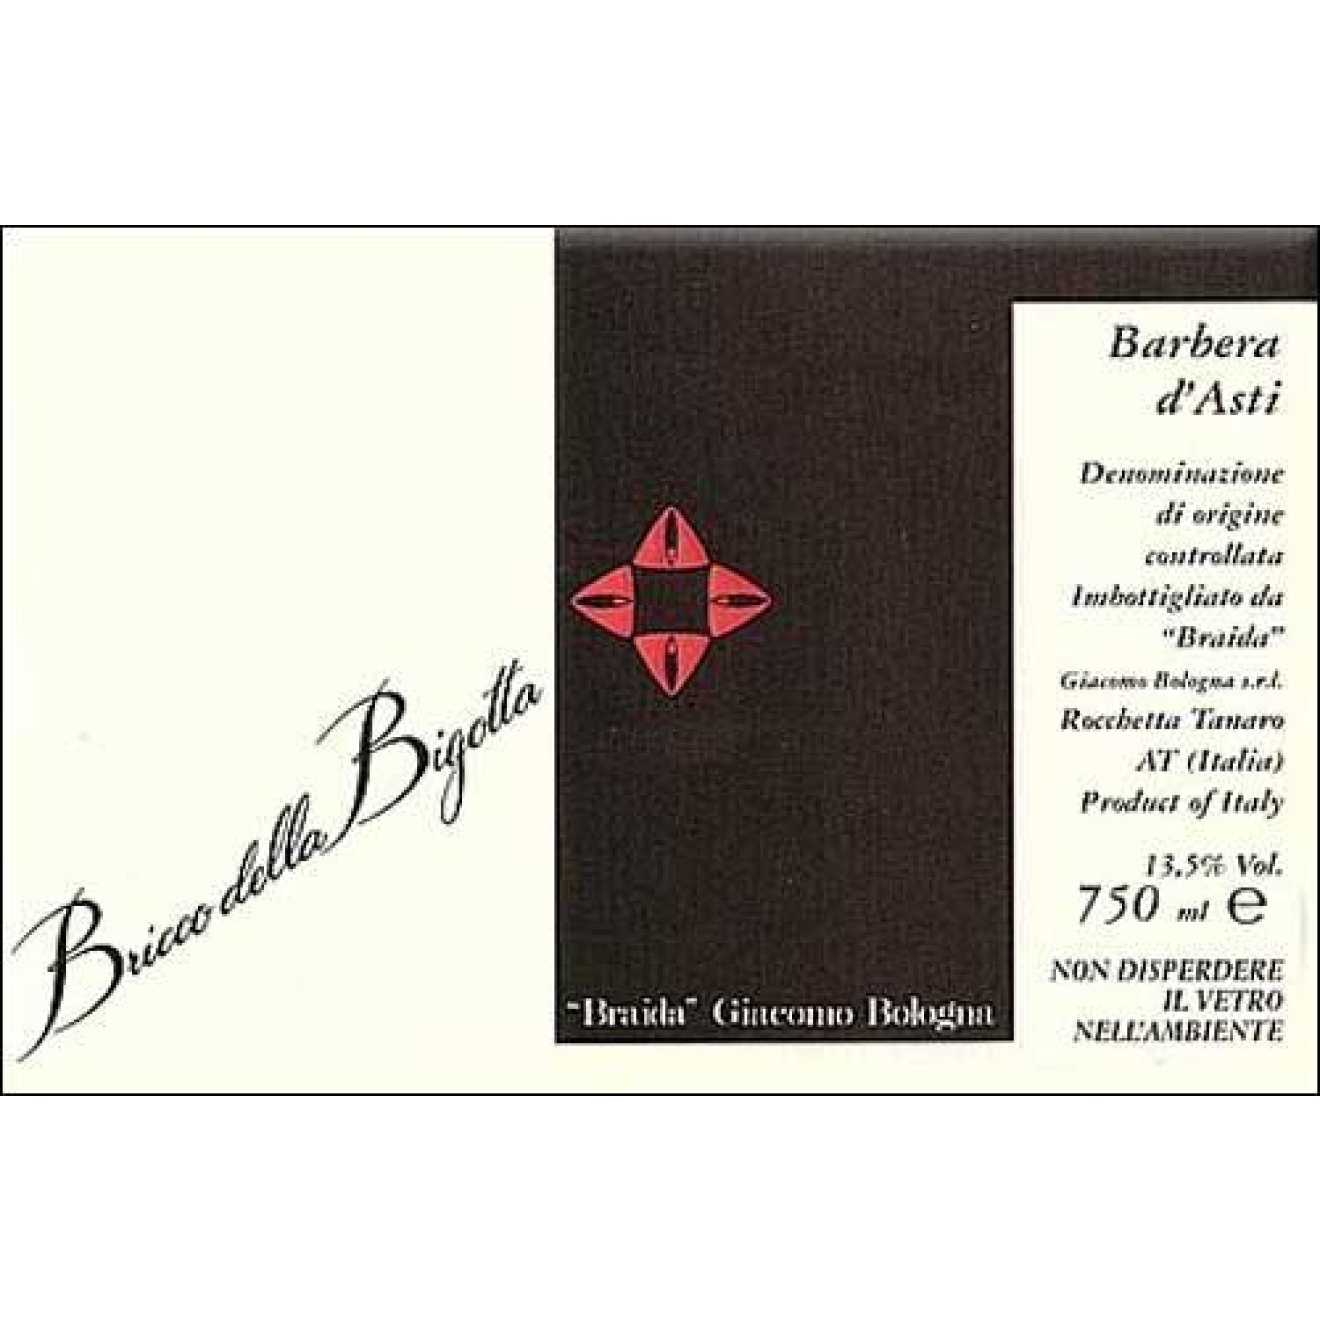 2004 Barbera d'Asti "Bricco della Bigotta" - Braida